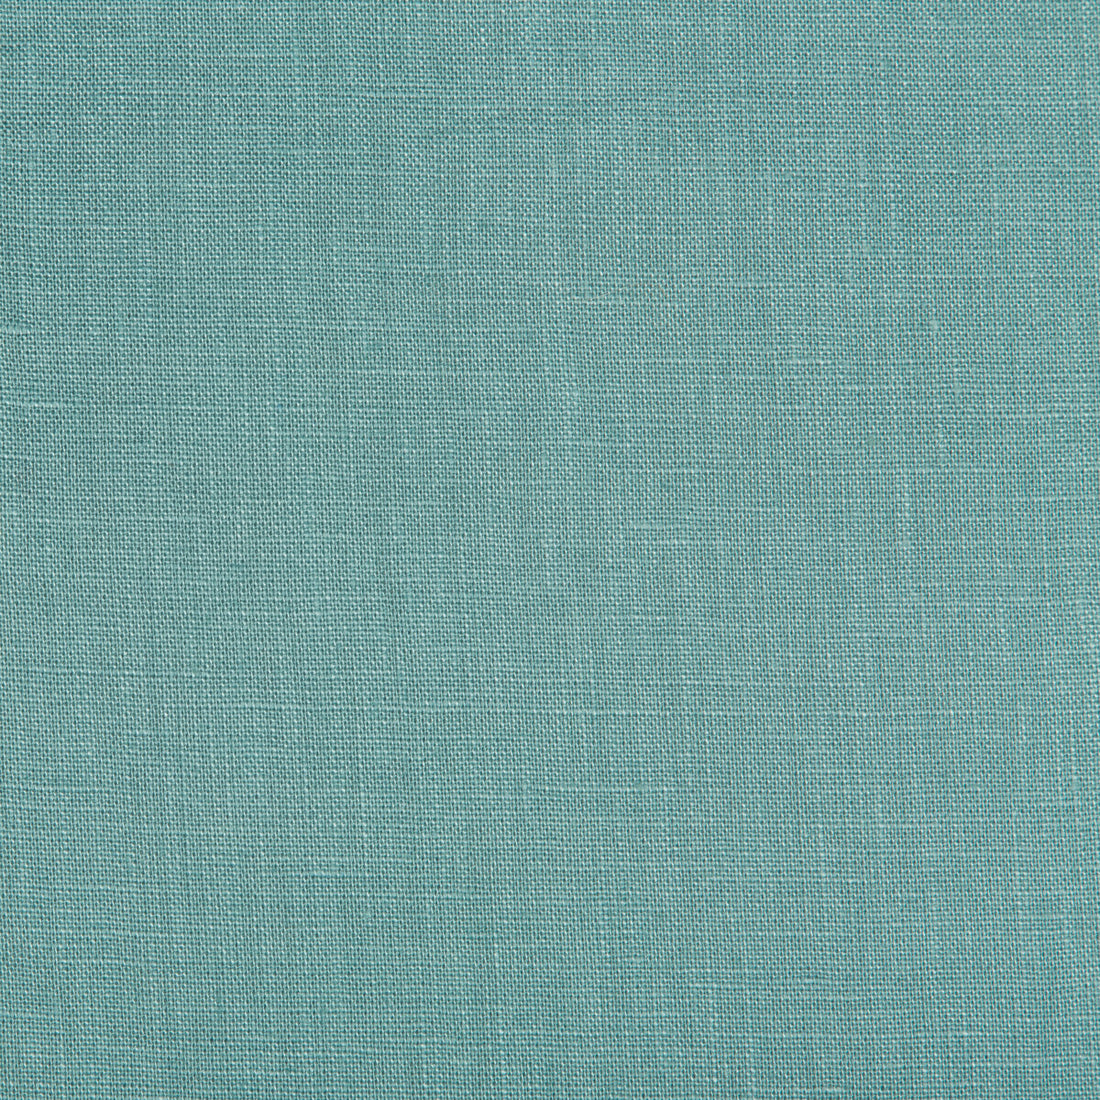 Kravet Basics fabric in 24570-35 color - pattern 24570.35.0 - by Kravet Basics